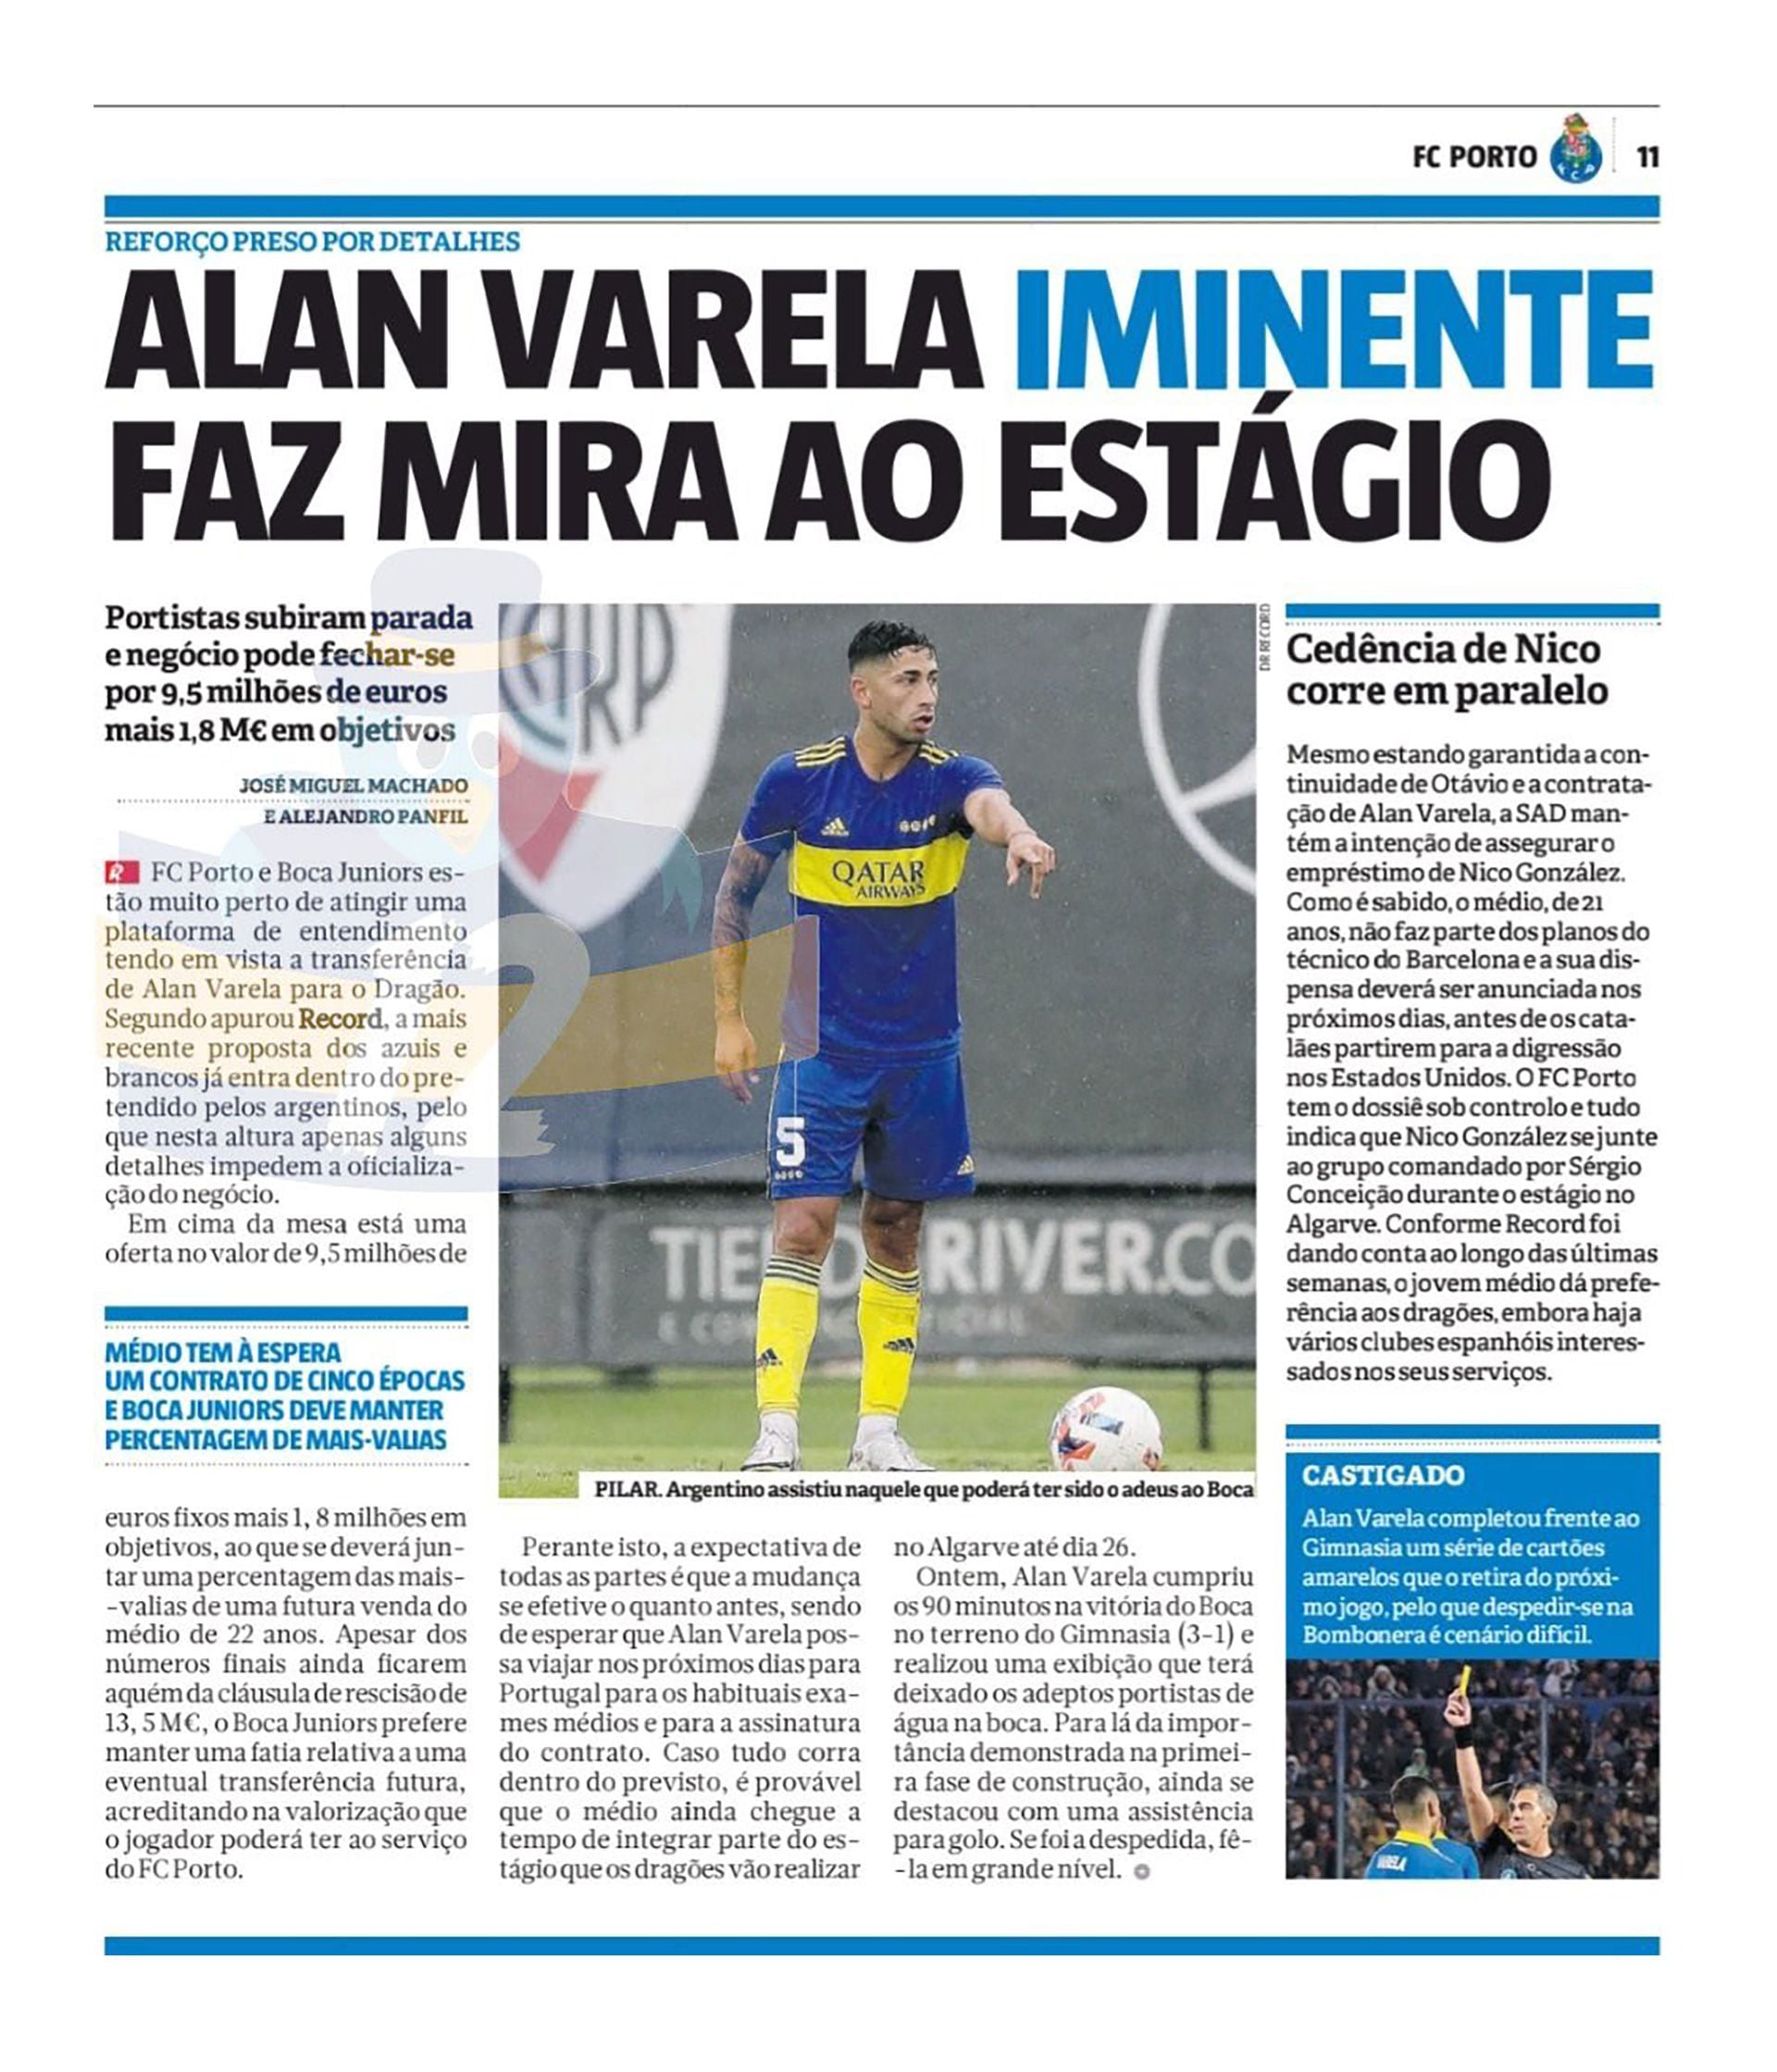 El Porto hizo una nueva oferta por Alan Varela